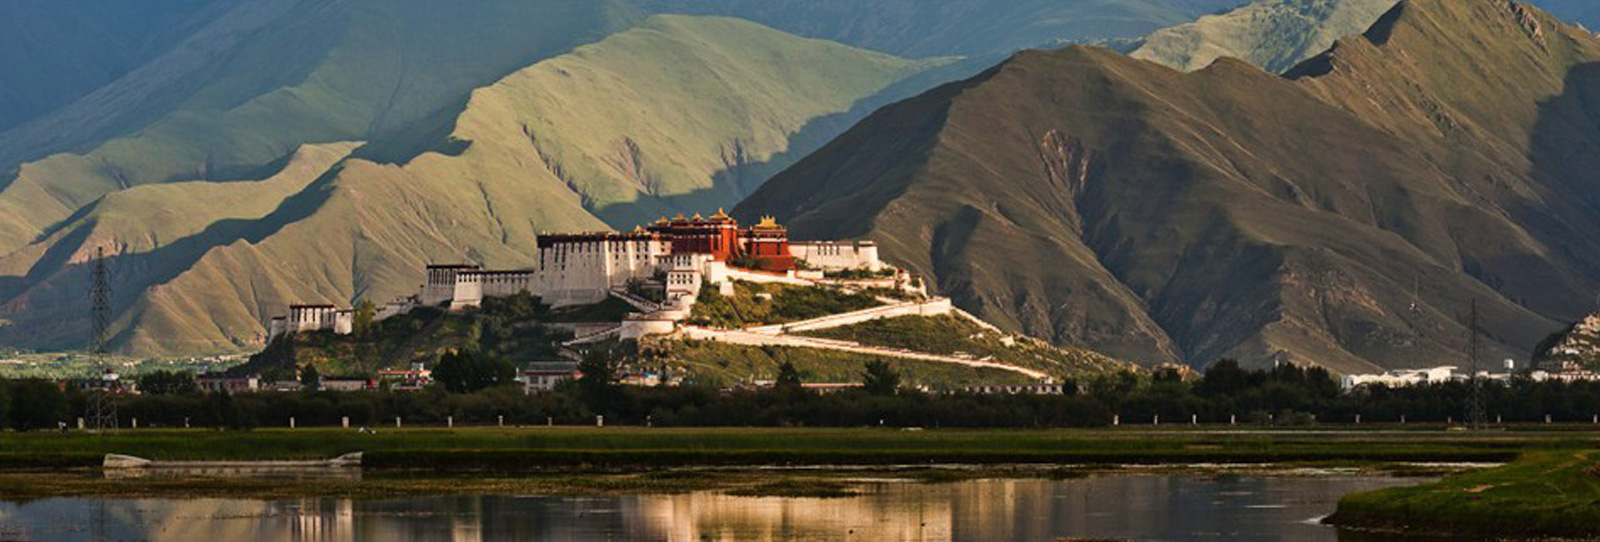 Tibet Entry Procedure